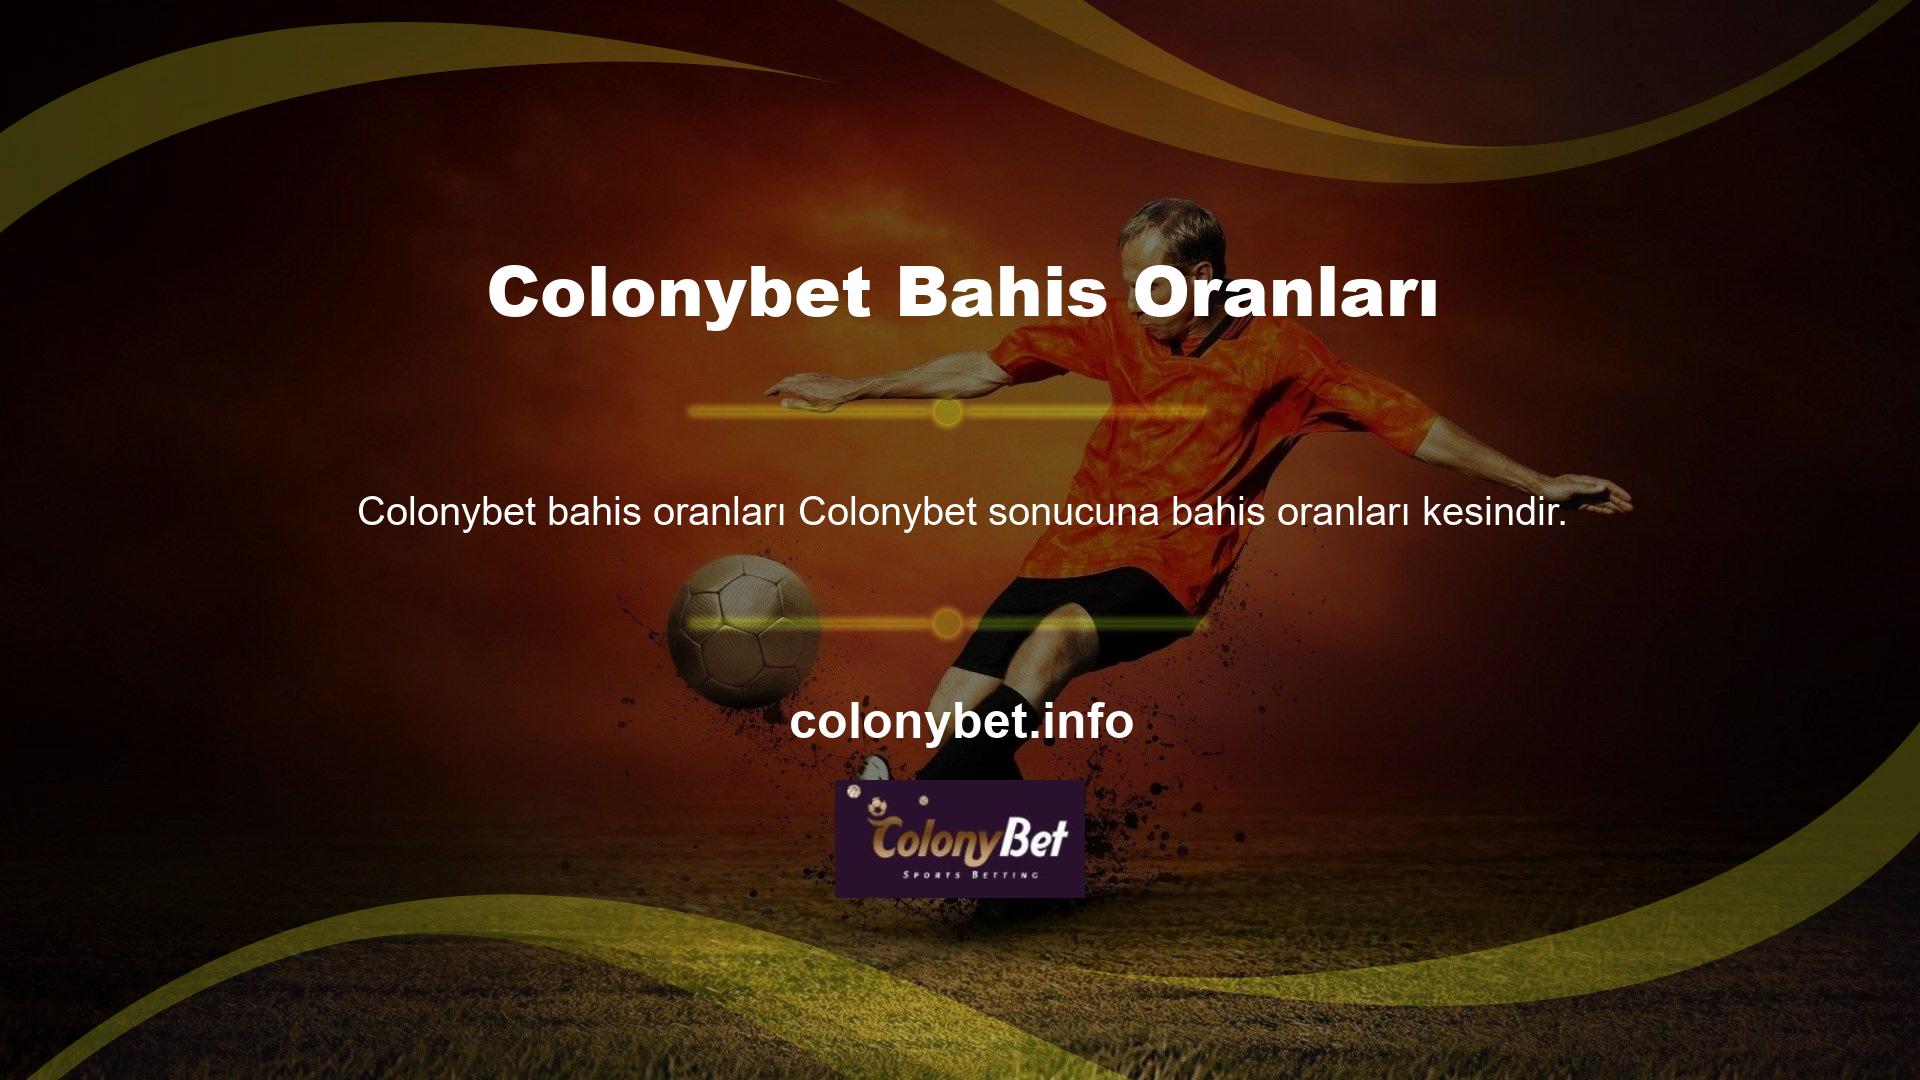 Bahis şirketi Colonybet ücretsiz bahis mevcuttur